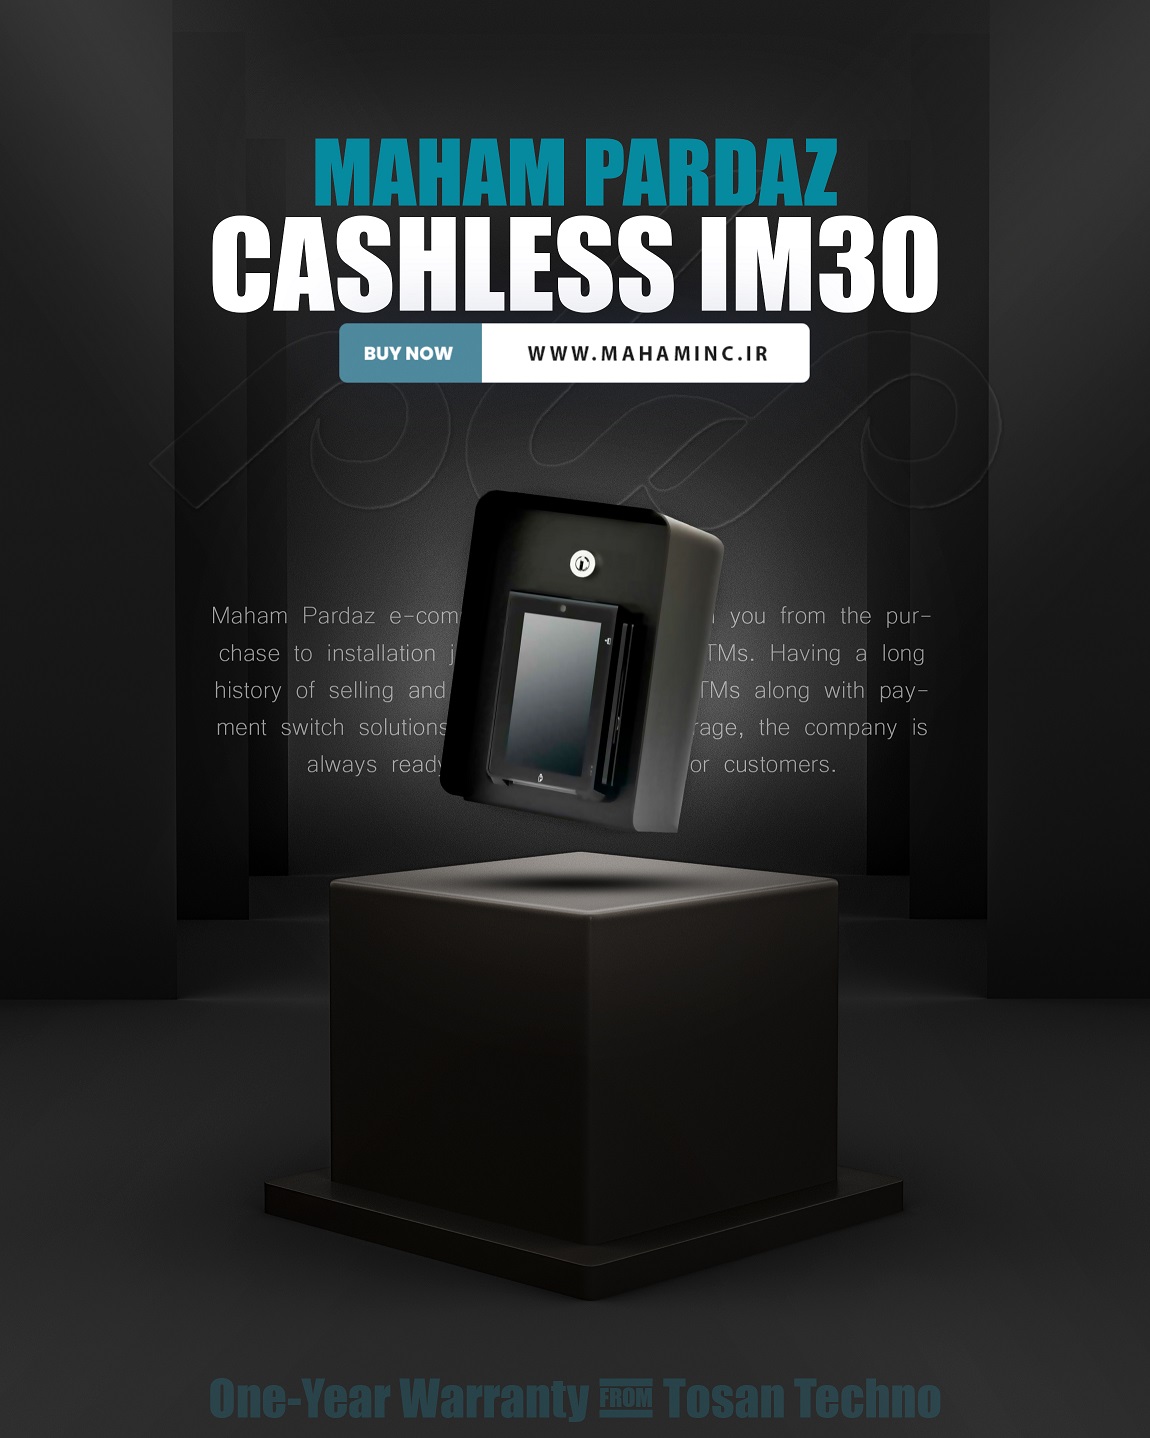 cashless IM30